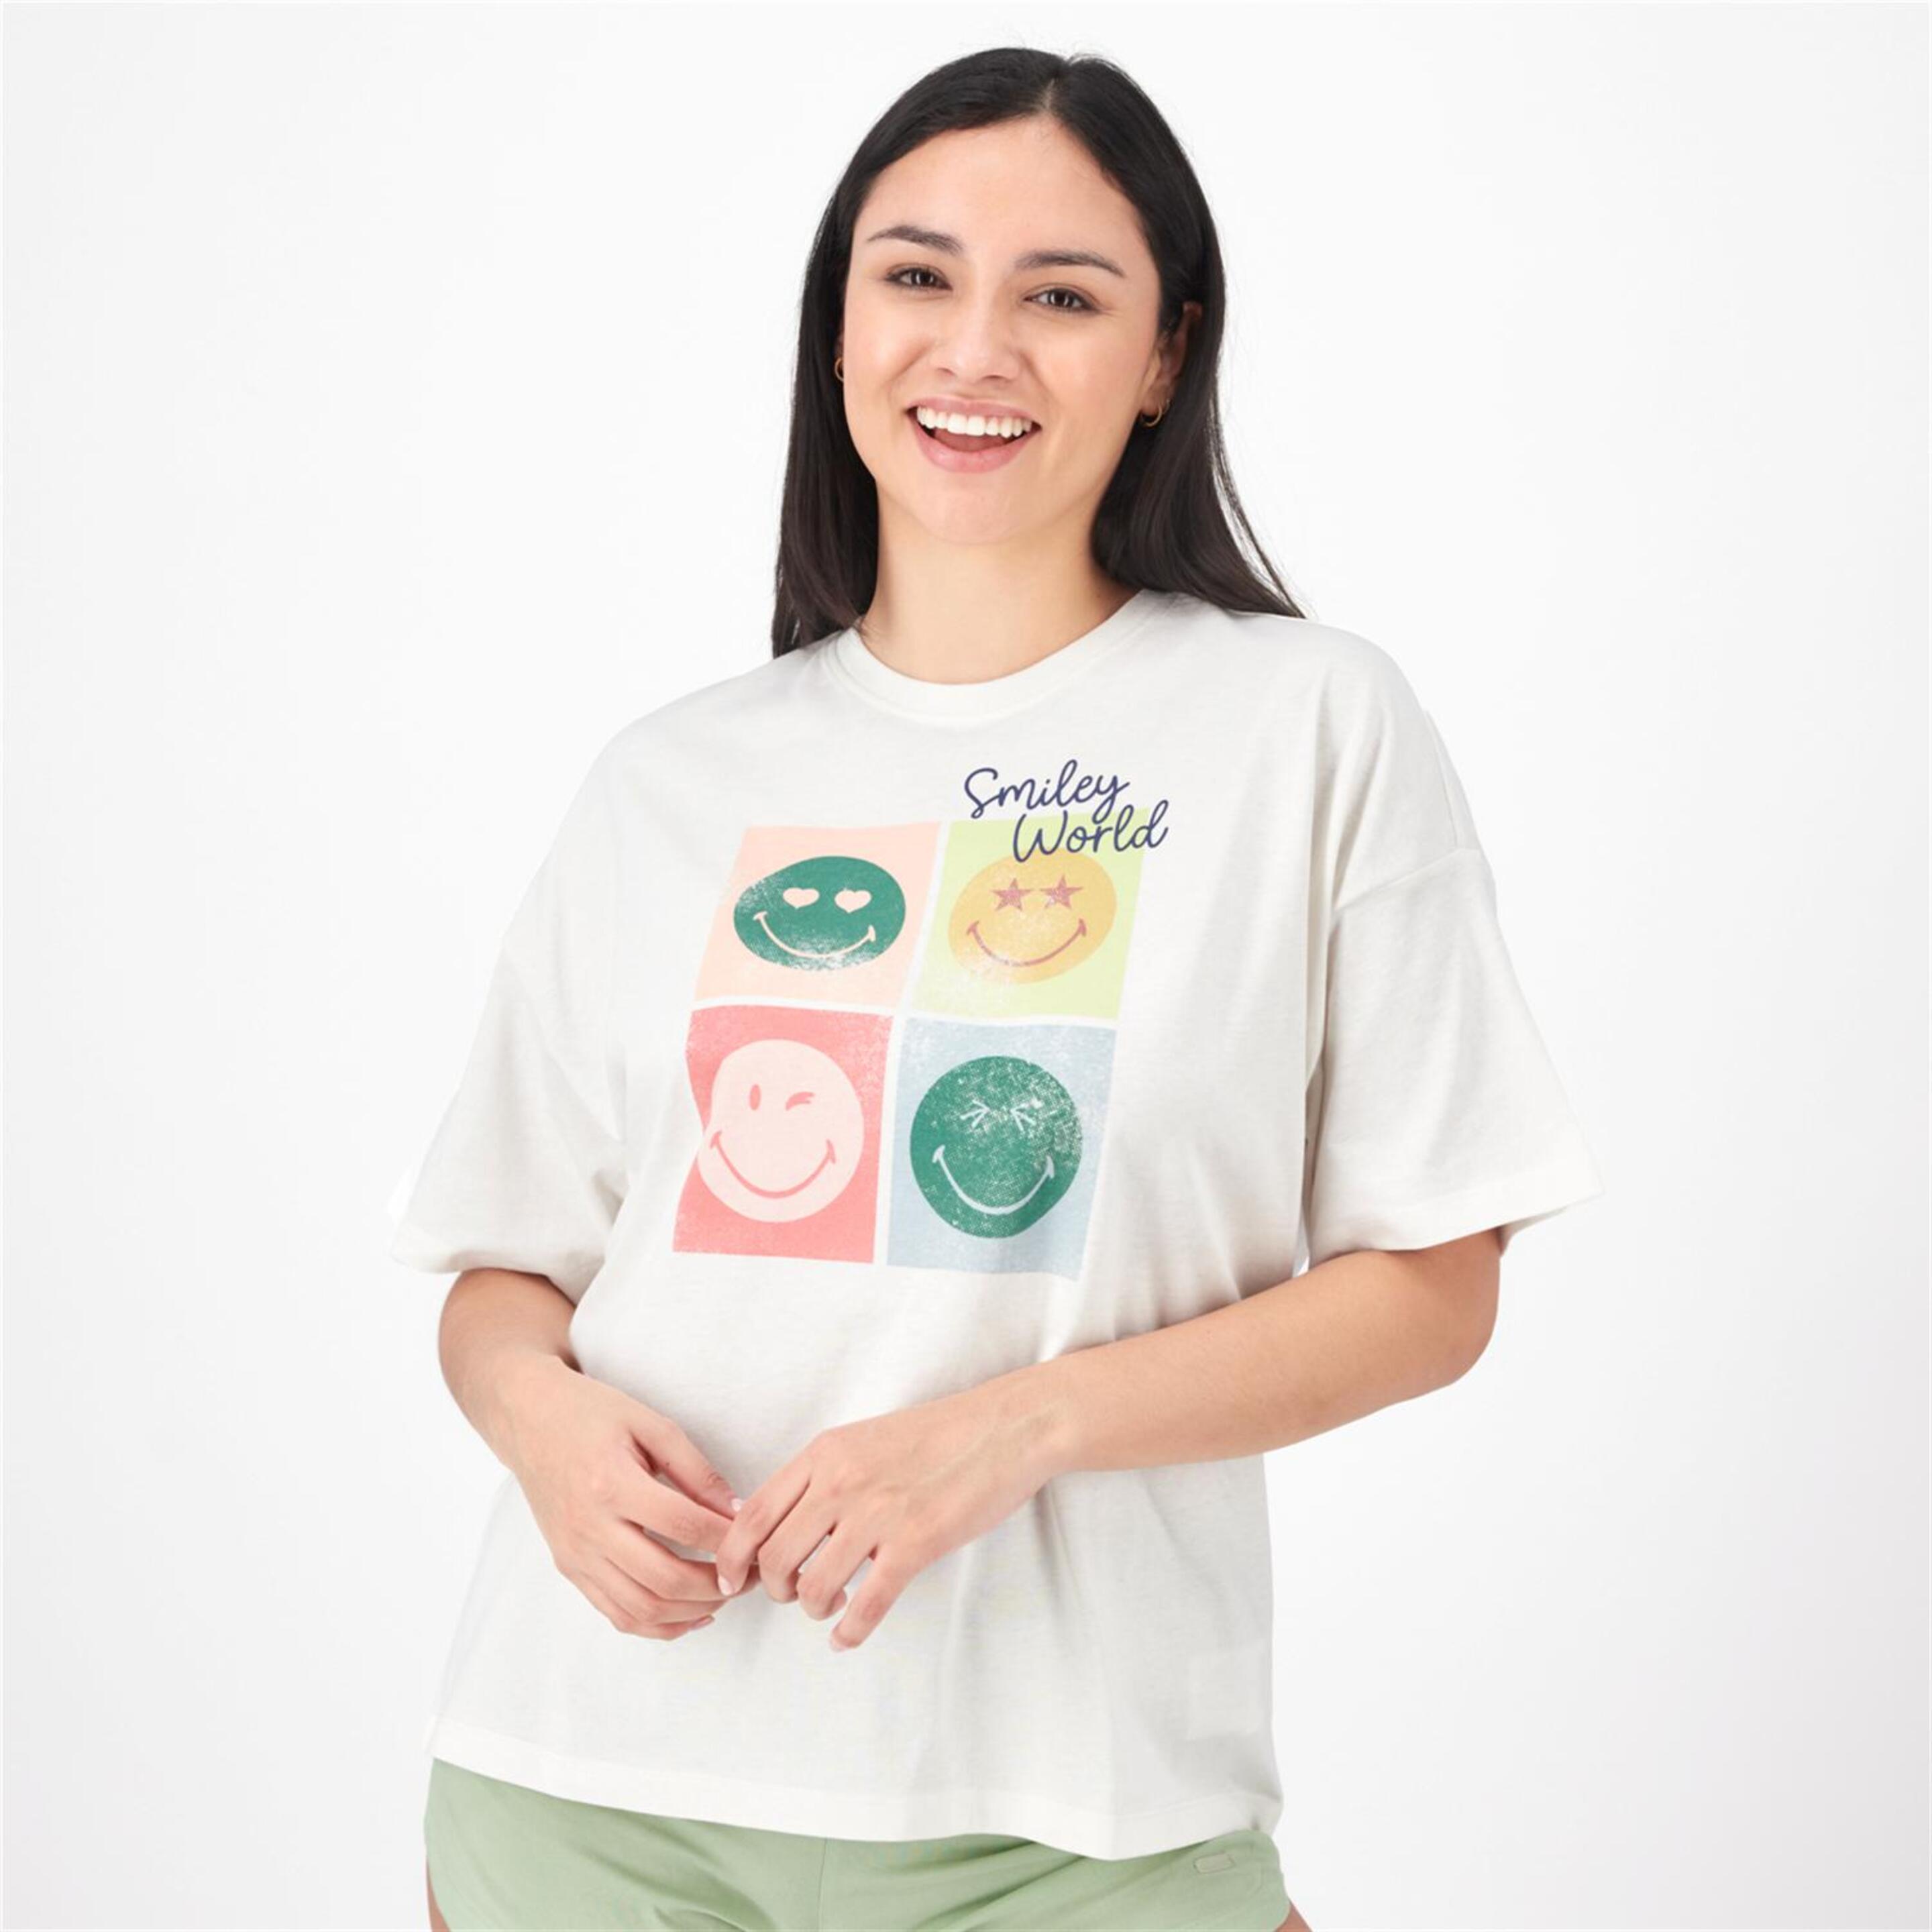 Camiseta SmileyWorld® - blanco - Camiseta Mujer